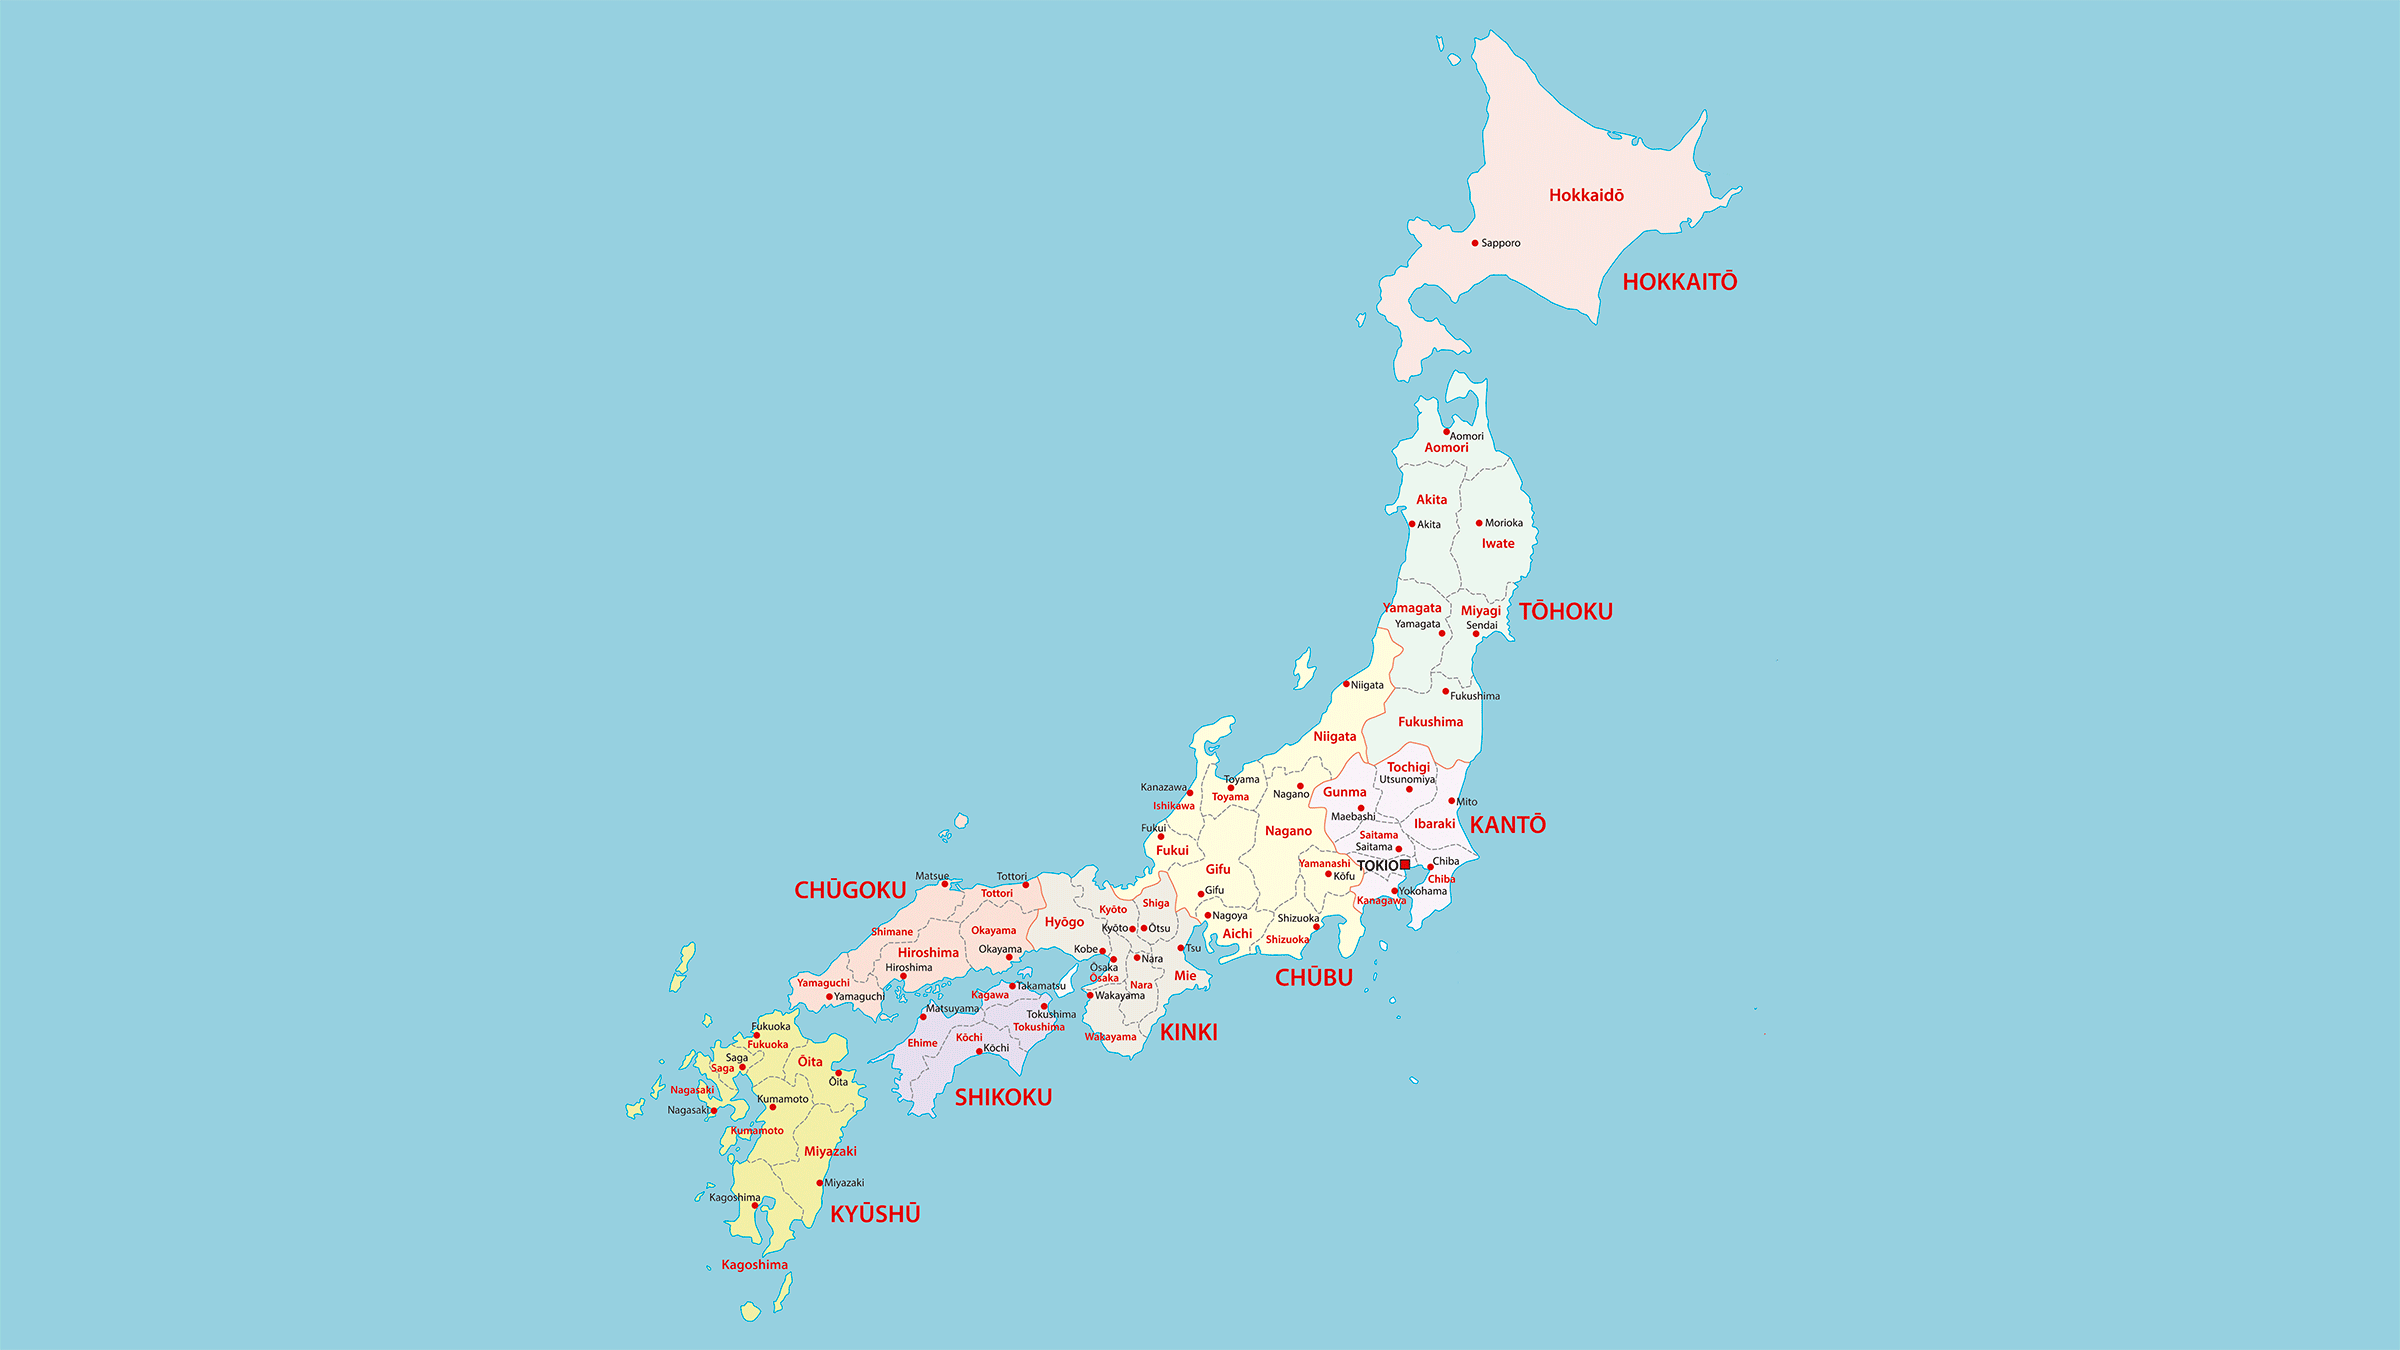 si-poes-a-compensar-japon-mapa-politico-cuota-sencillo-janice